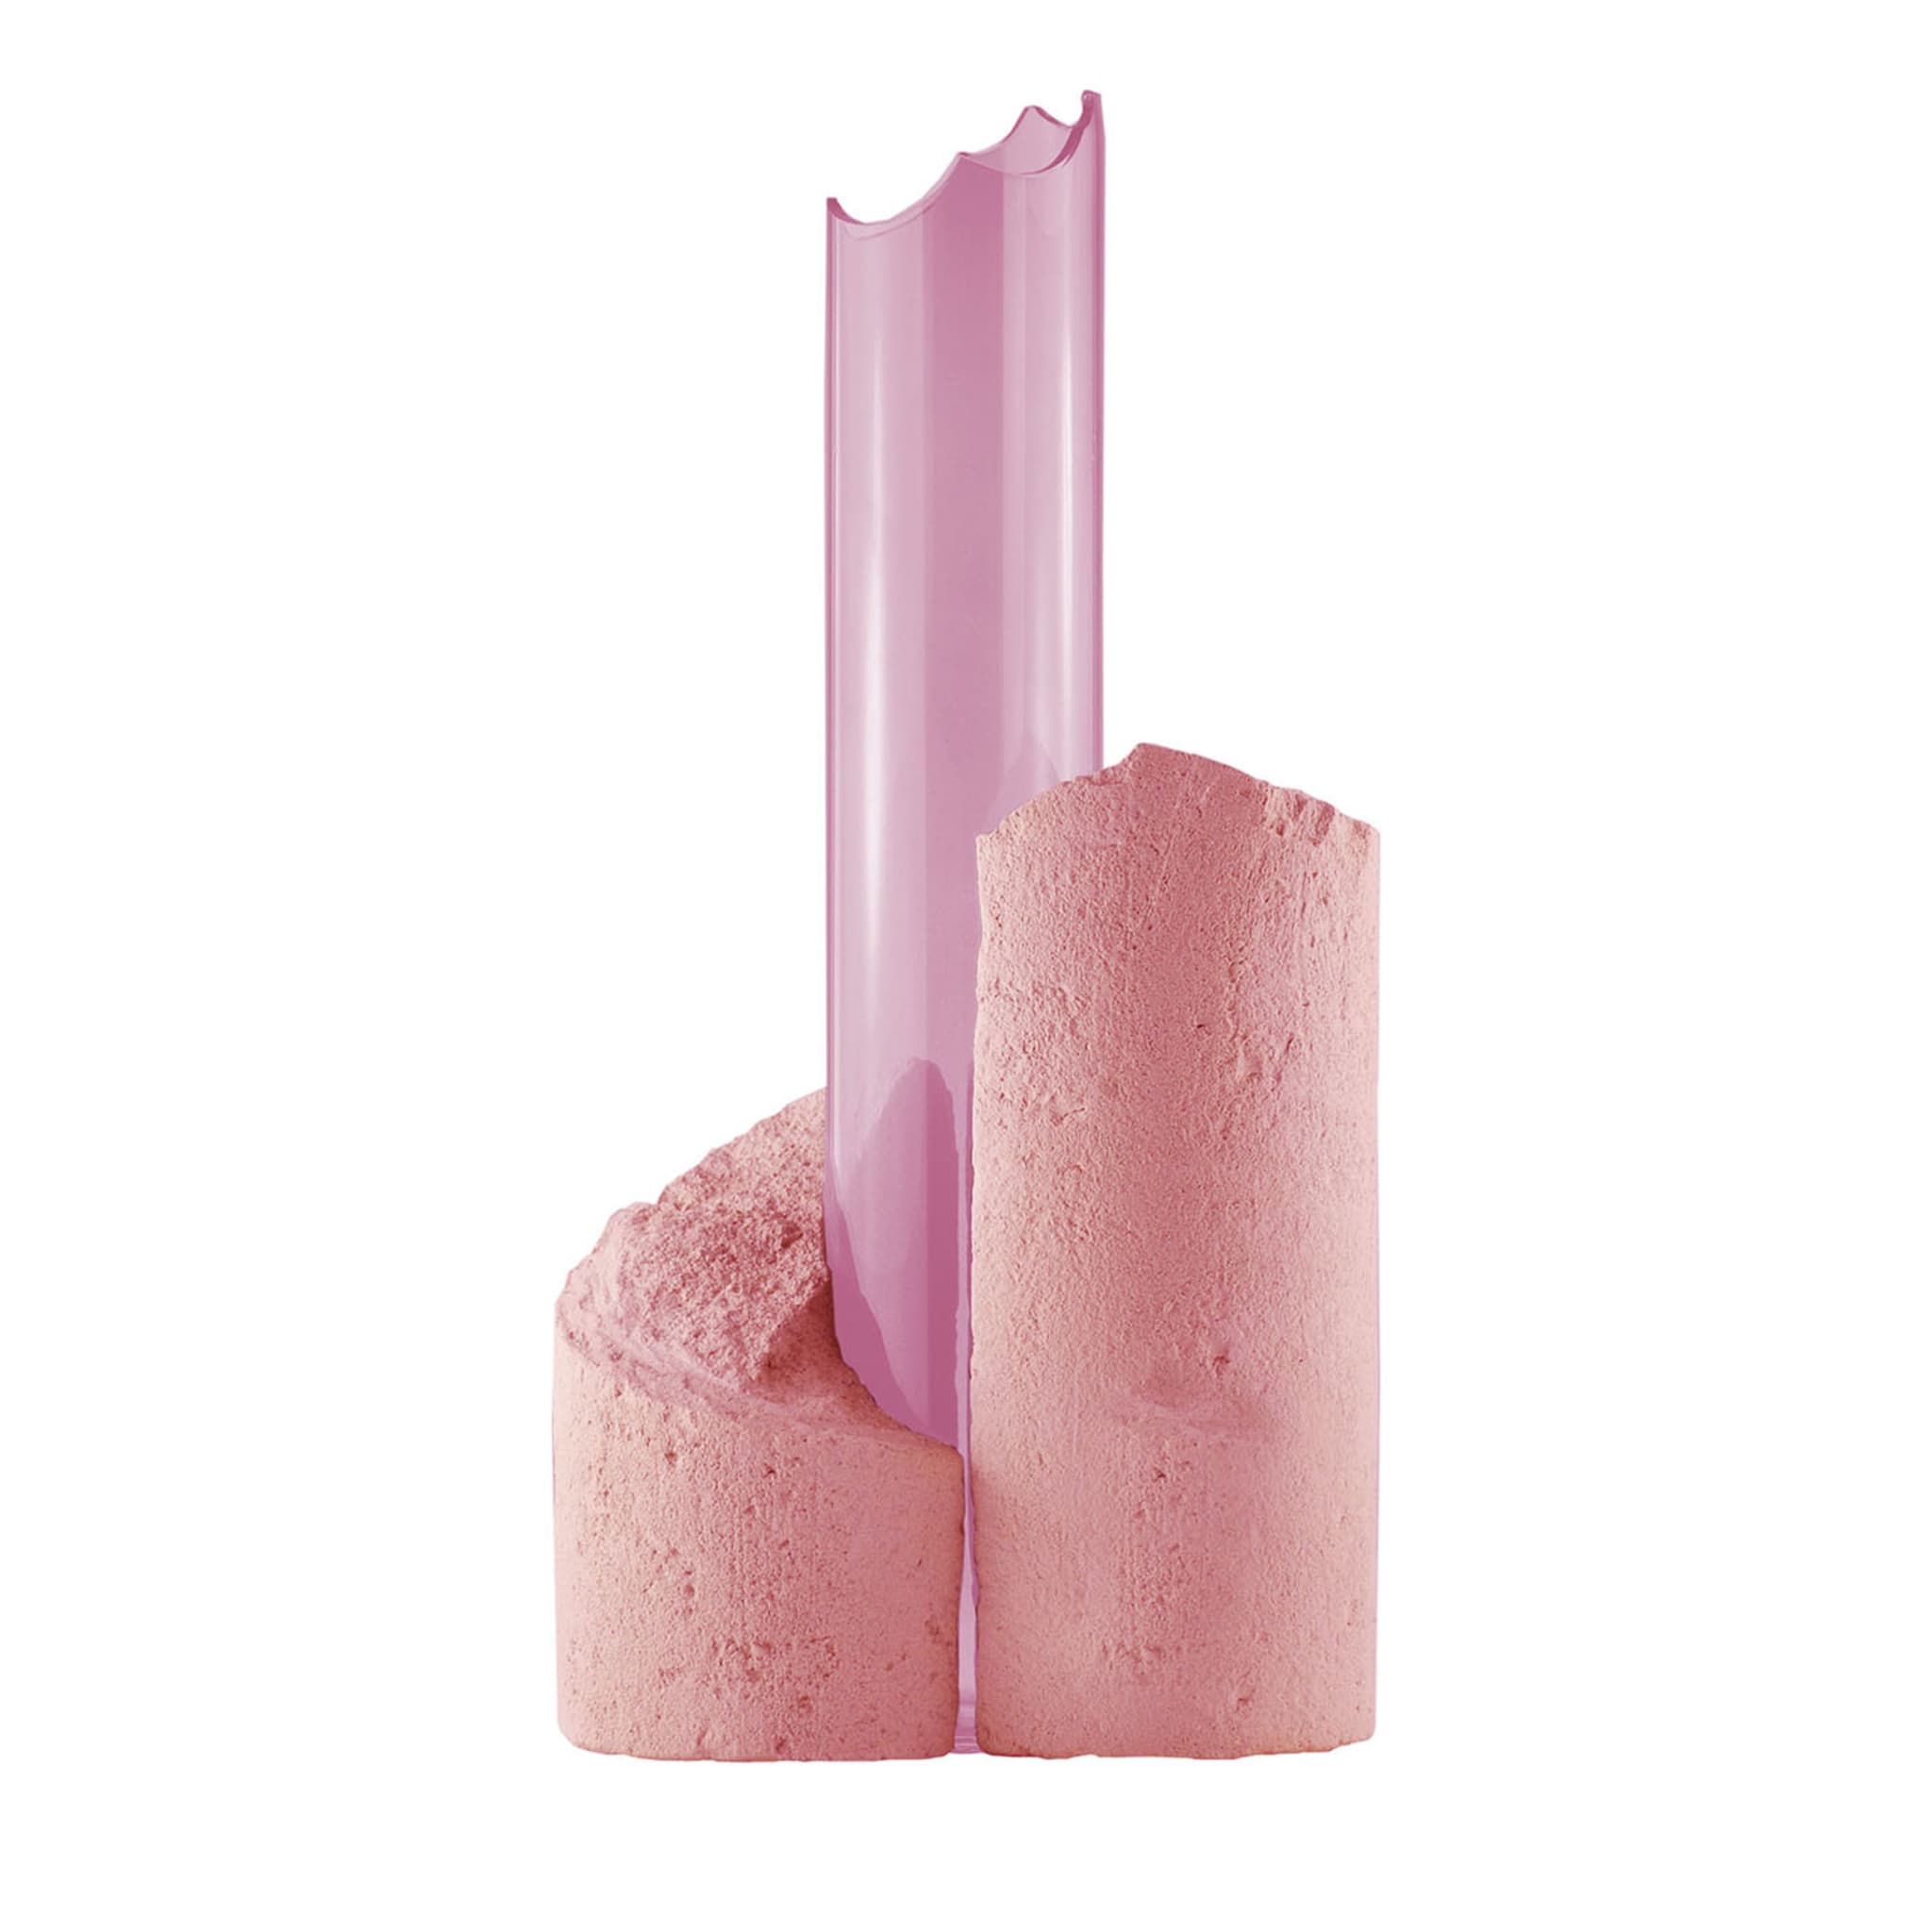 Chrysallis N°1 Pink Vase - Main view